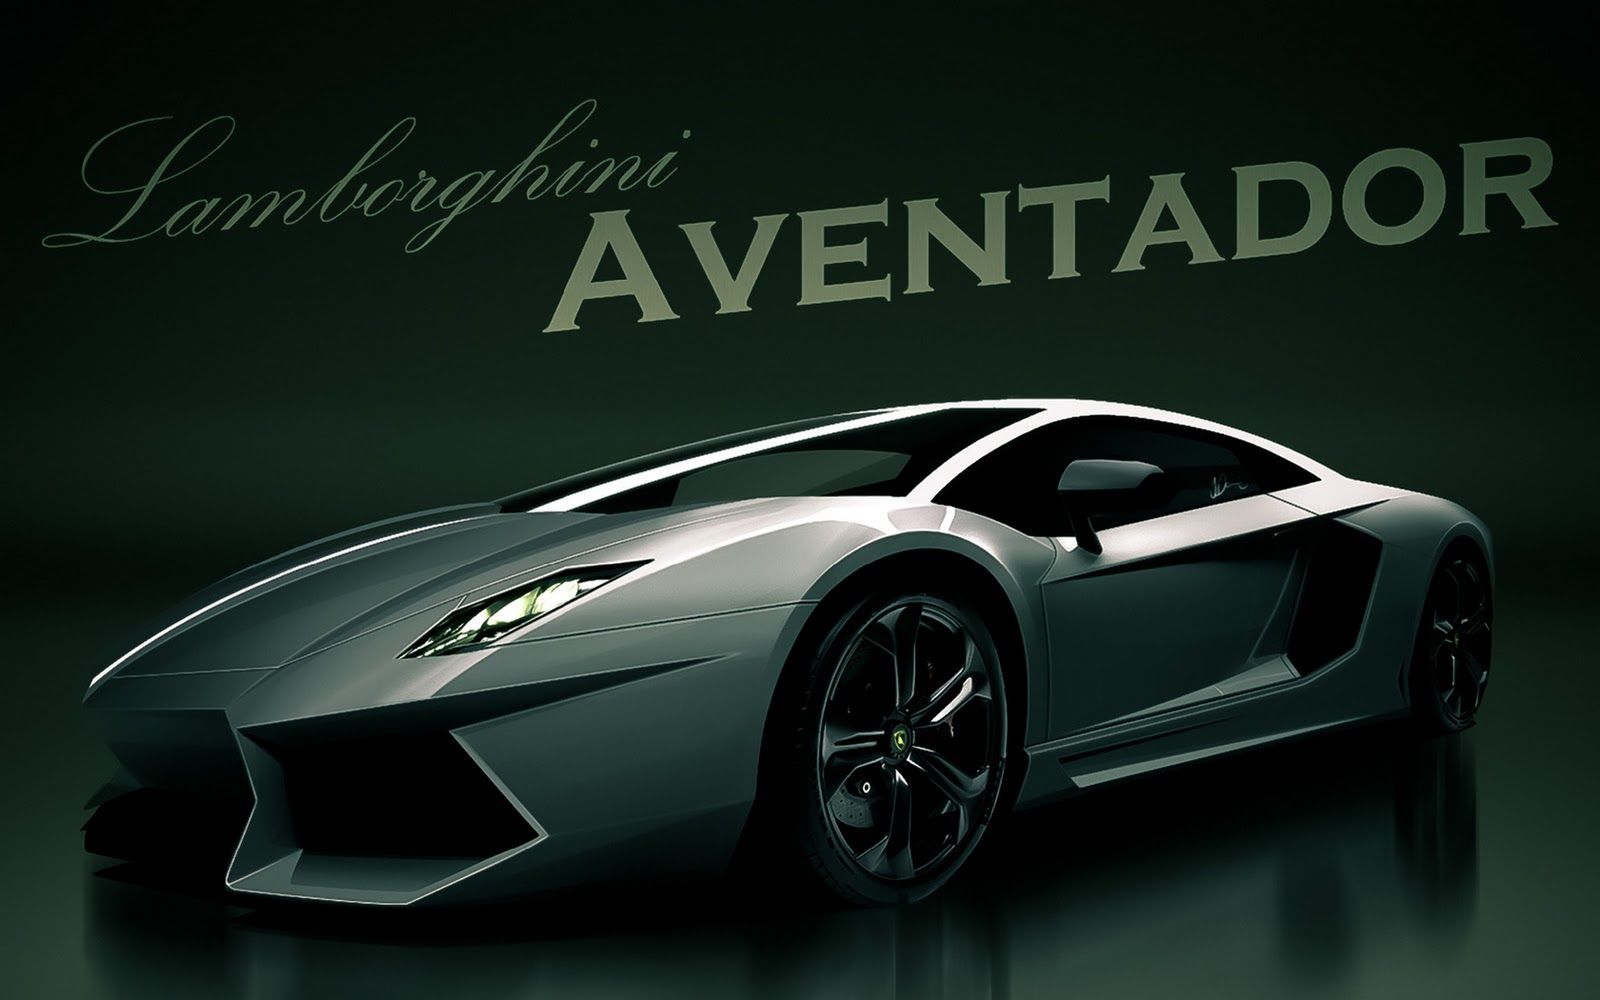 HD Wallpaper Widescreen 1080p 3d Lamborghini Aventador